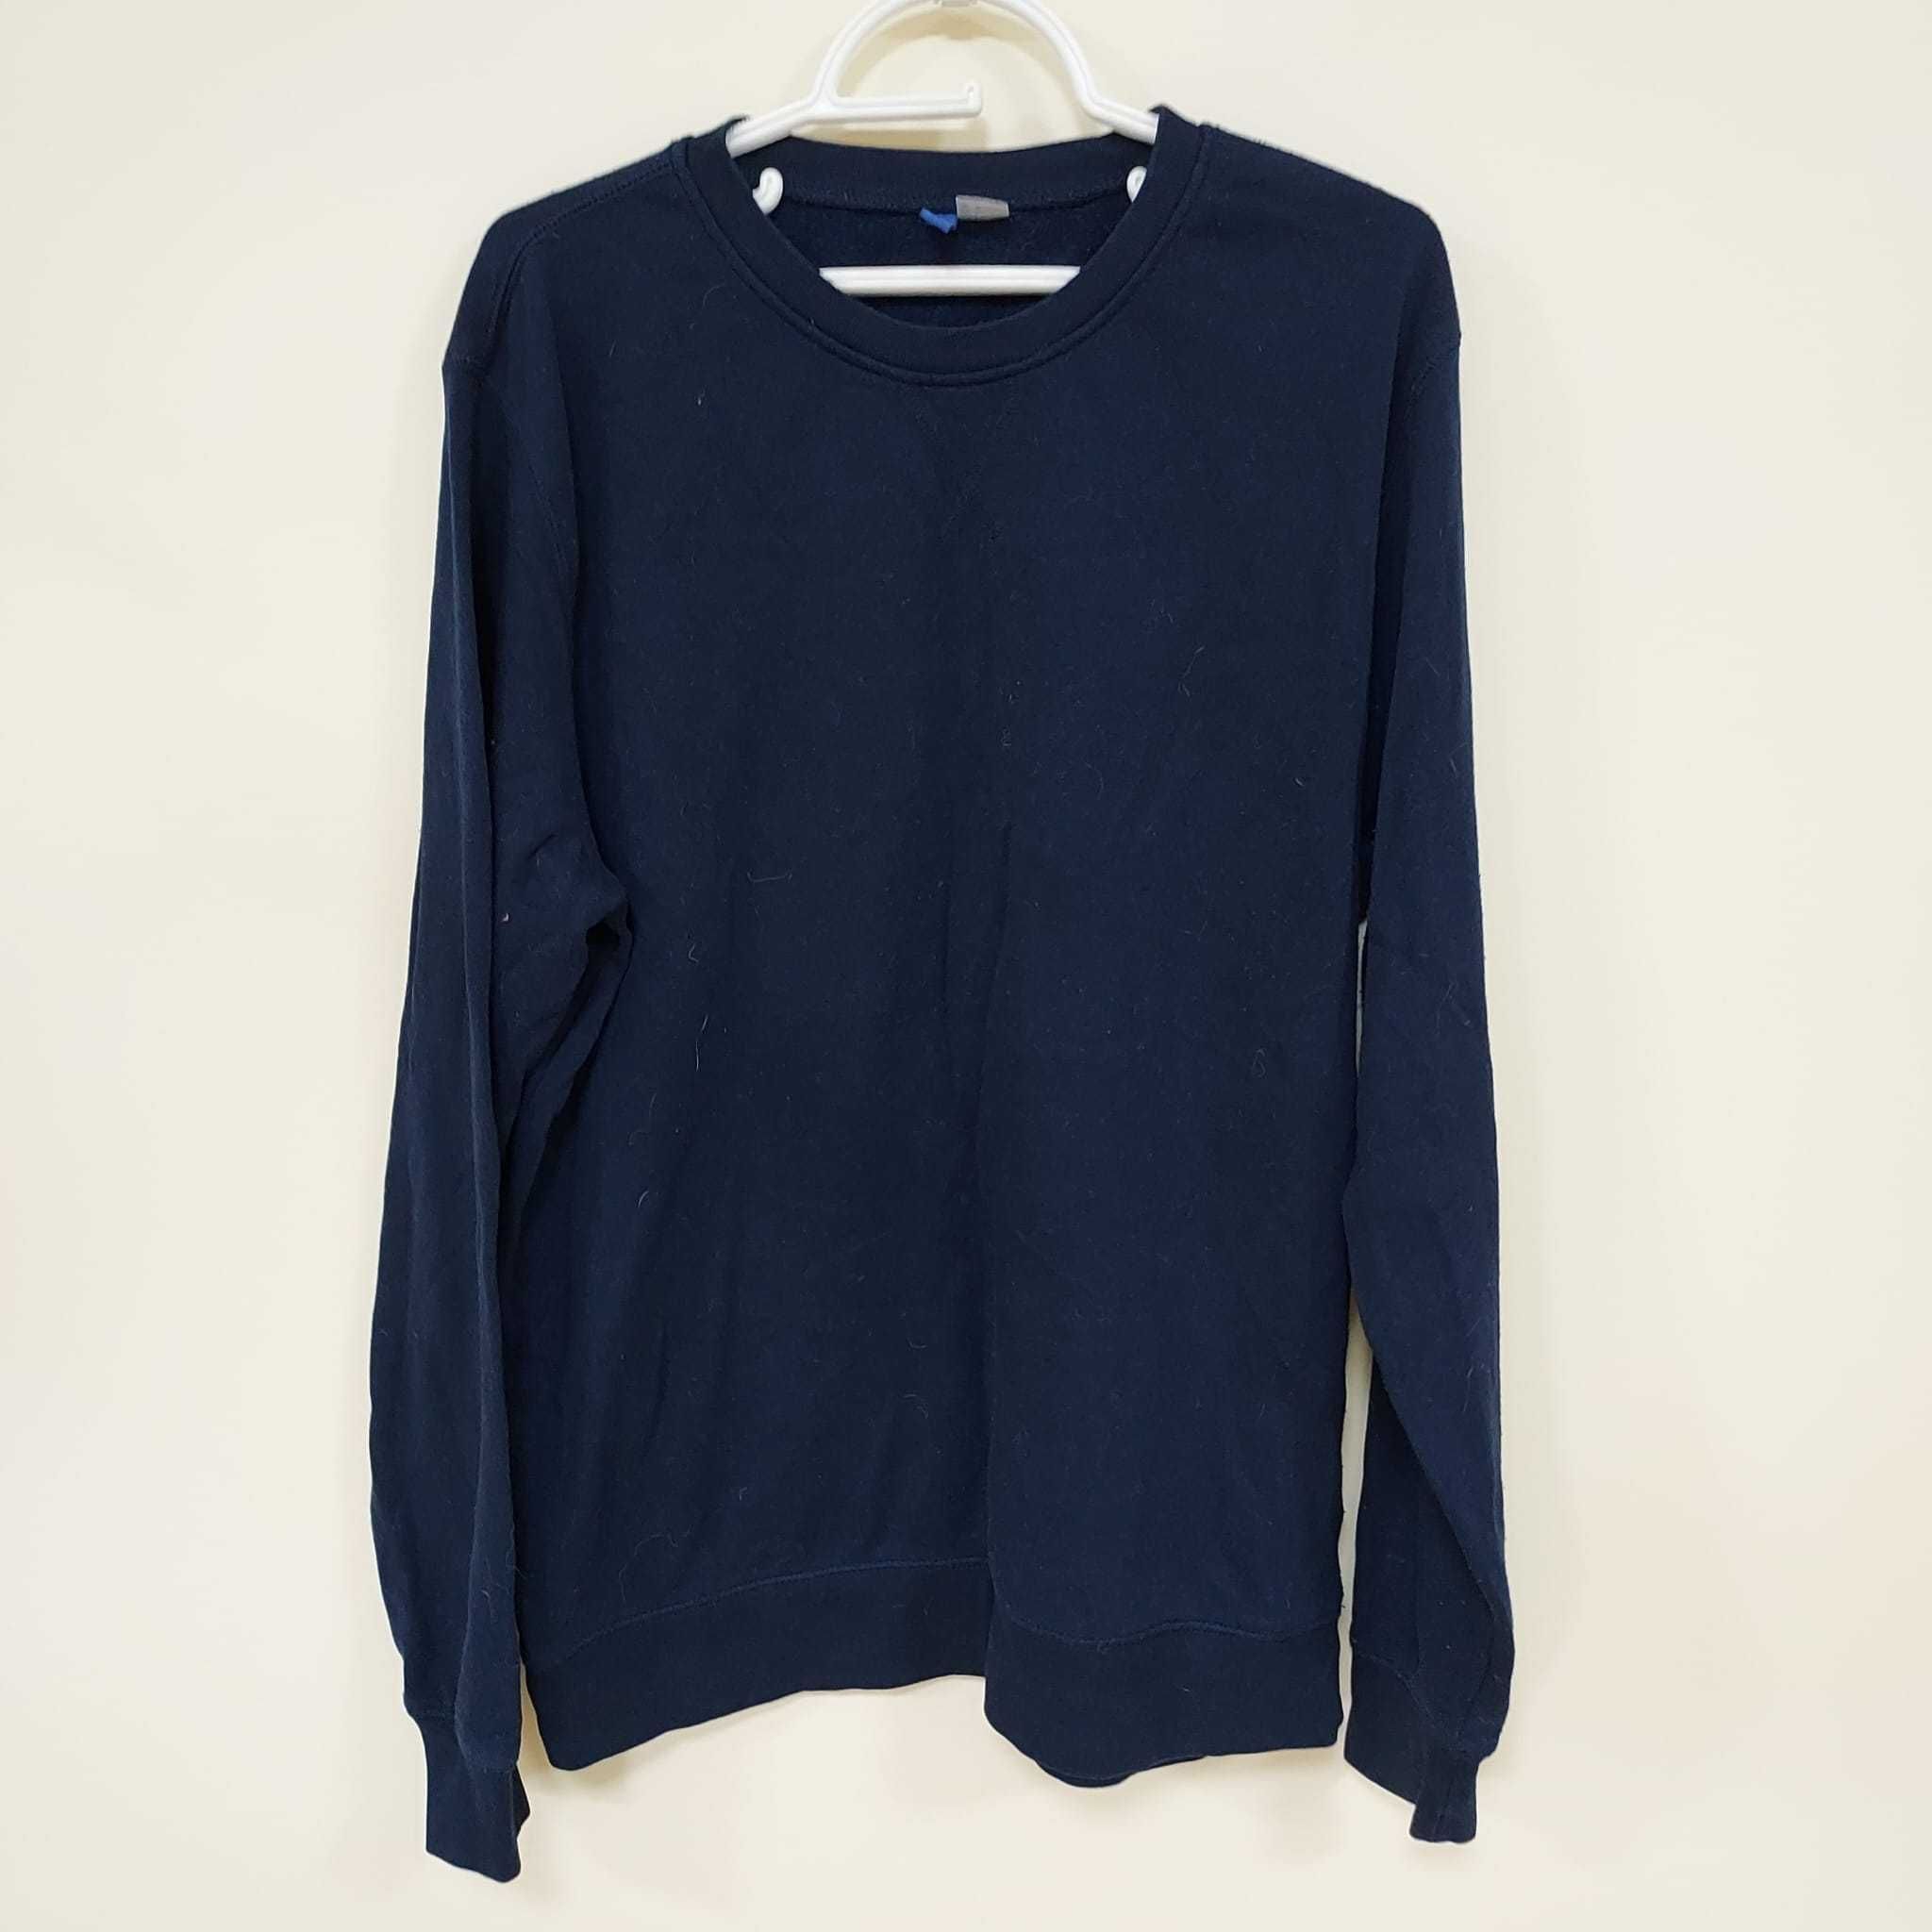 Divided - Stylowy sweter w kolorze granatowym, rozmiar L